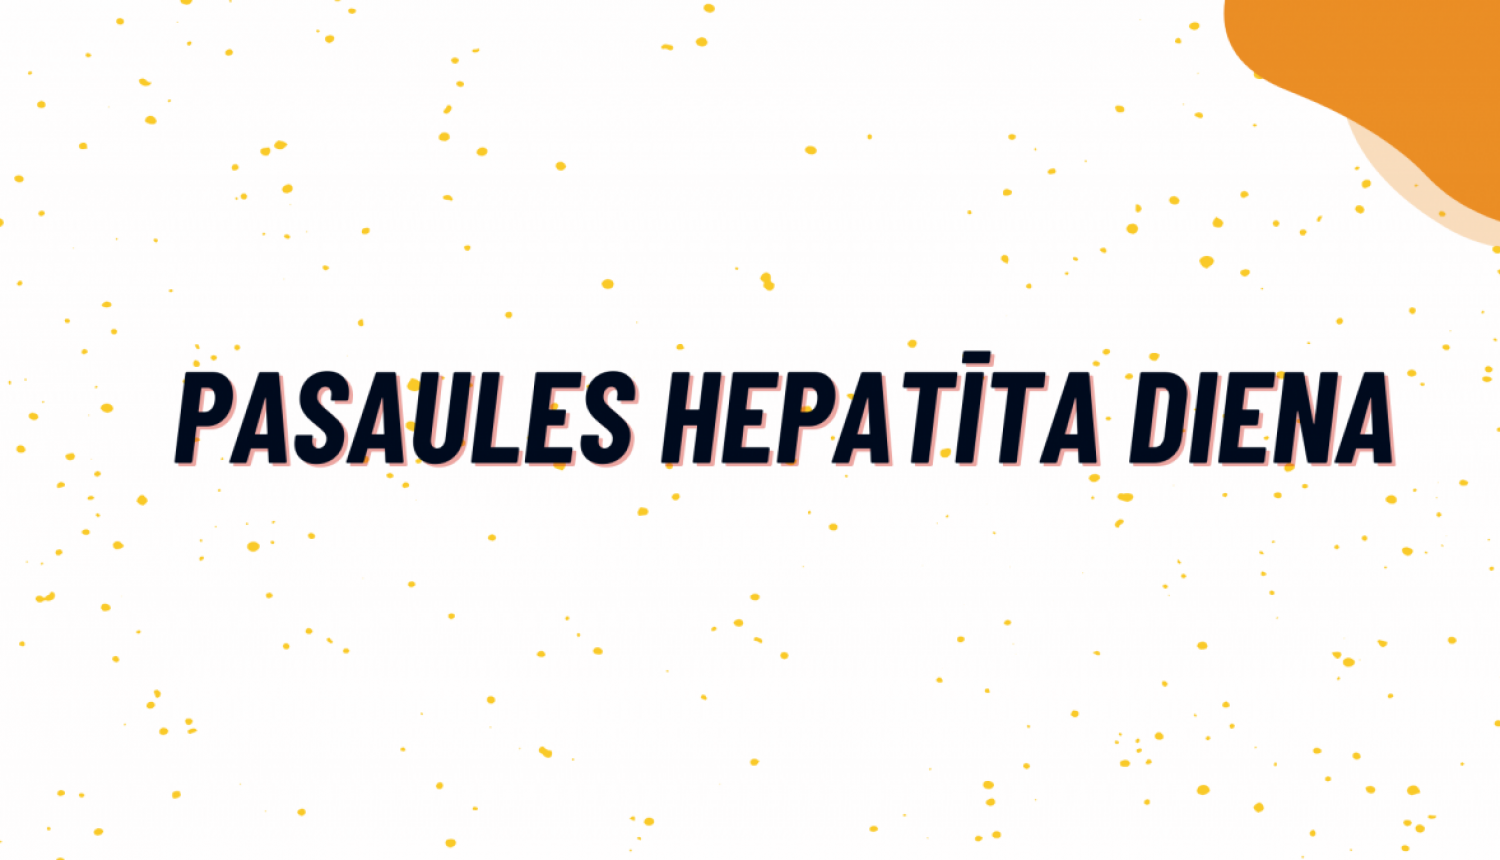 hepatits